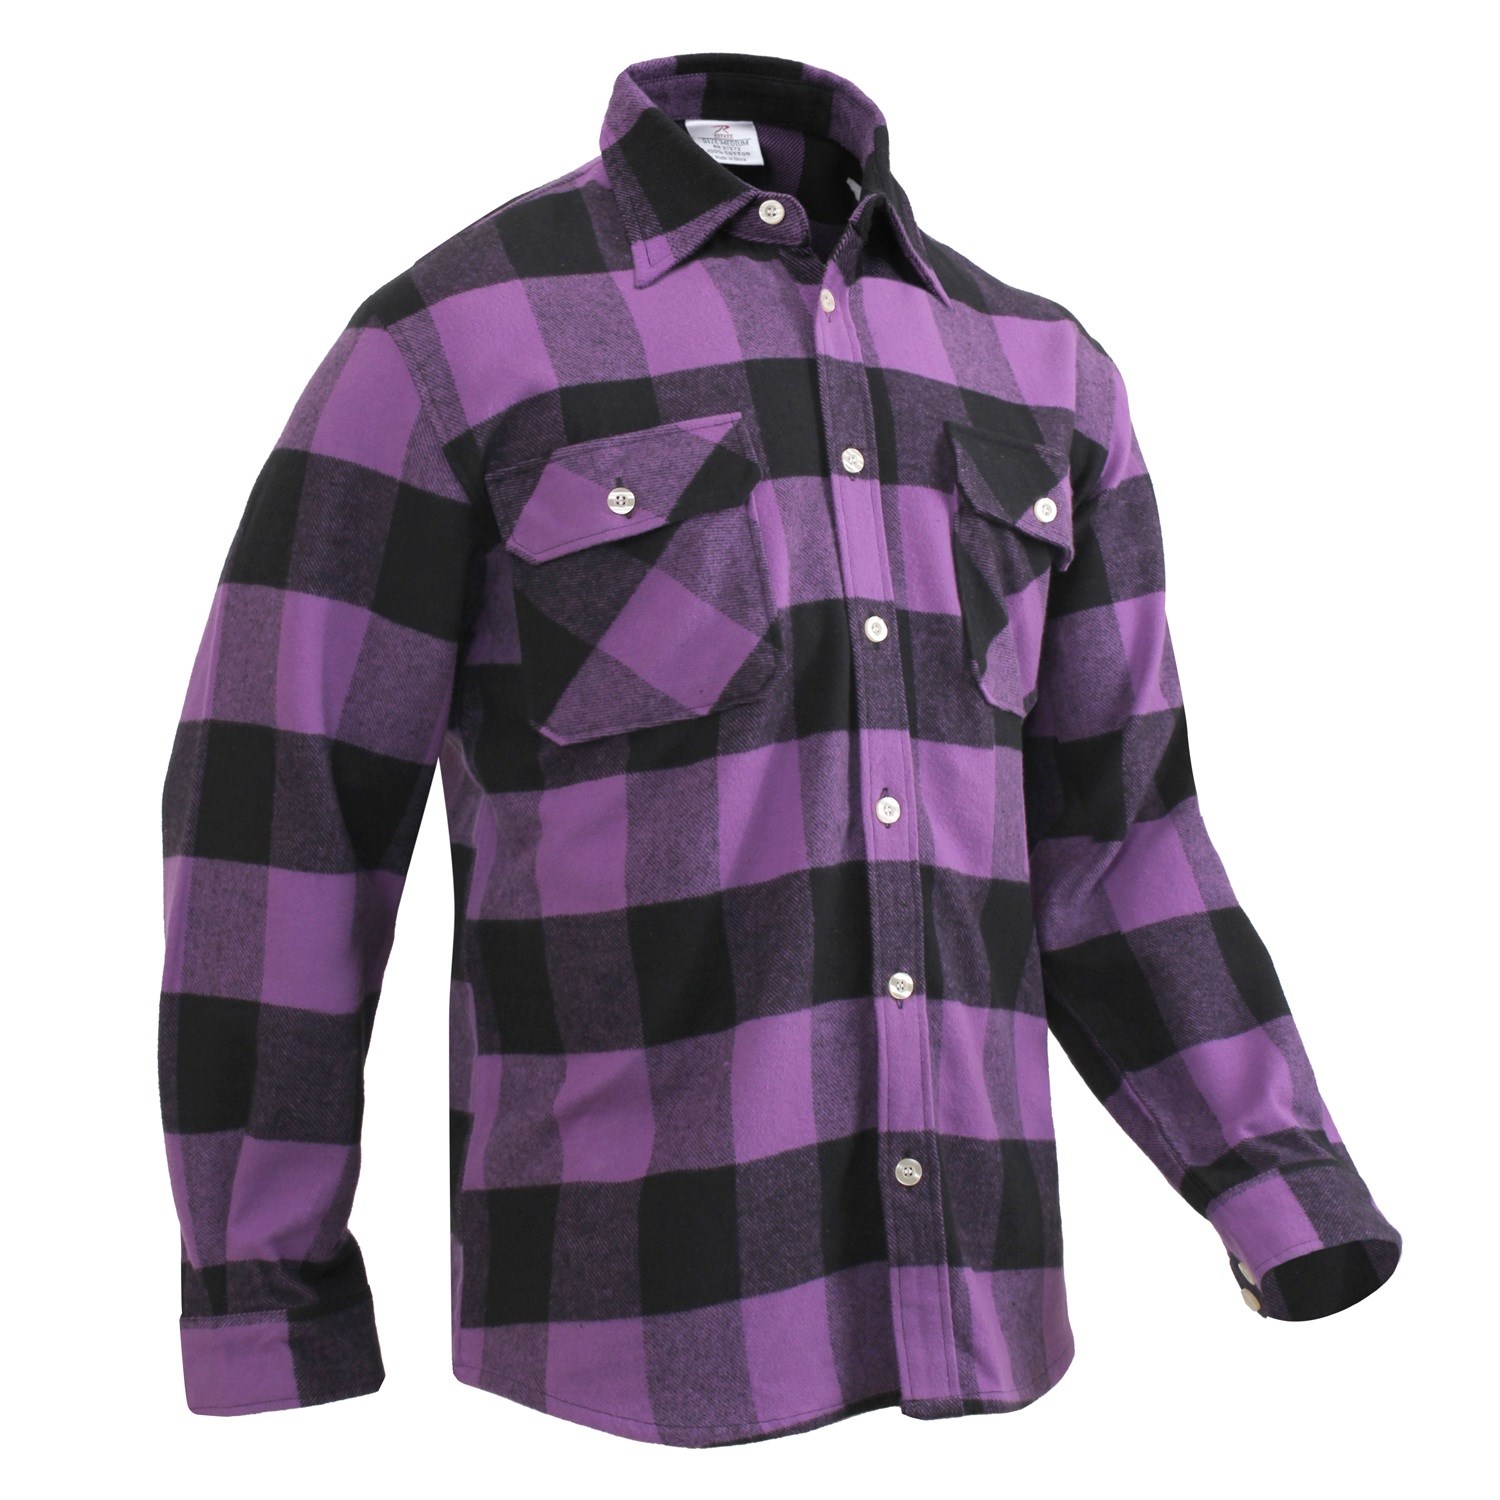 Lumberjack plaid shirt FLANNEL PURPLE PLAID ROTHCO 3989 L-11